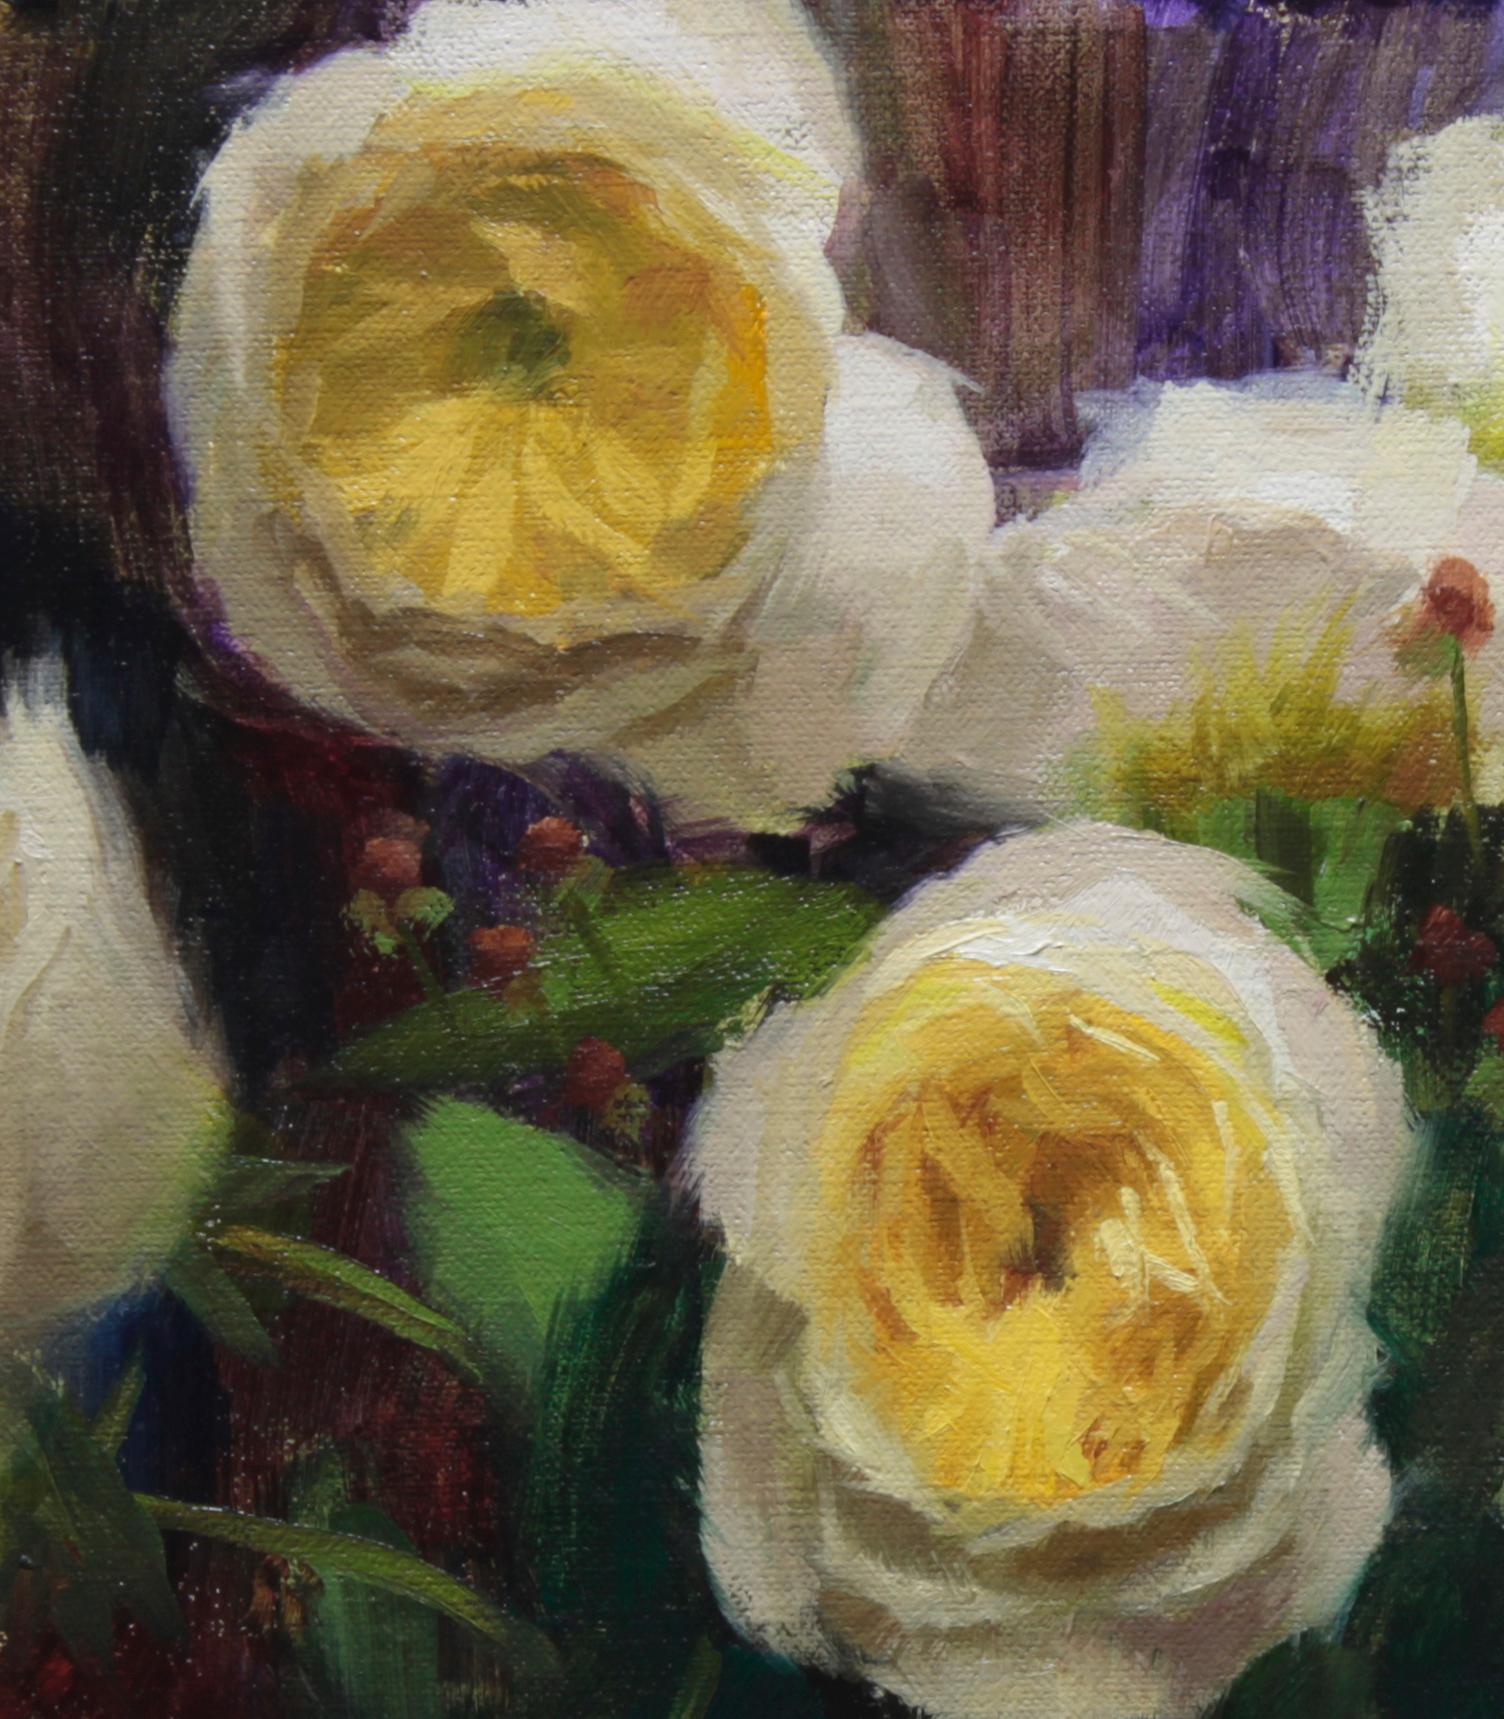 Blumengarten mit Rosen, floral, repräsentativ, Eule,  Signature-Künstler mit Pinselstrich (Schwarz), Still-Life Painting, von Zac Elletson